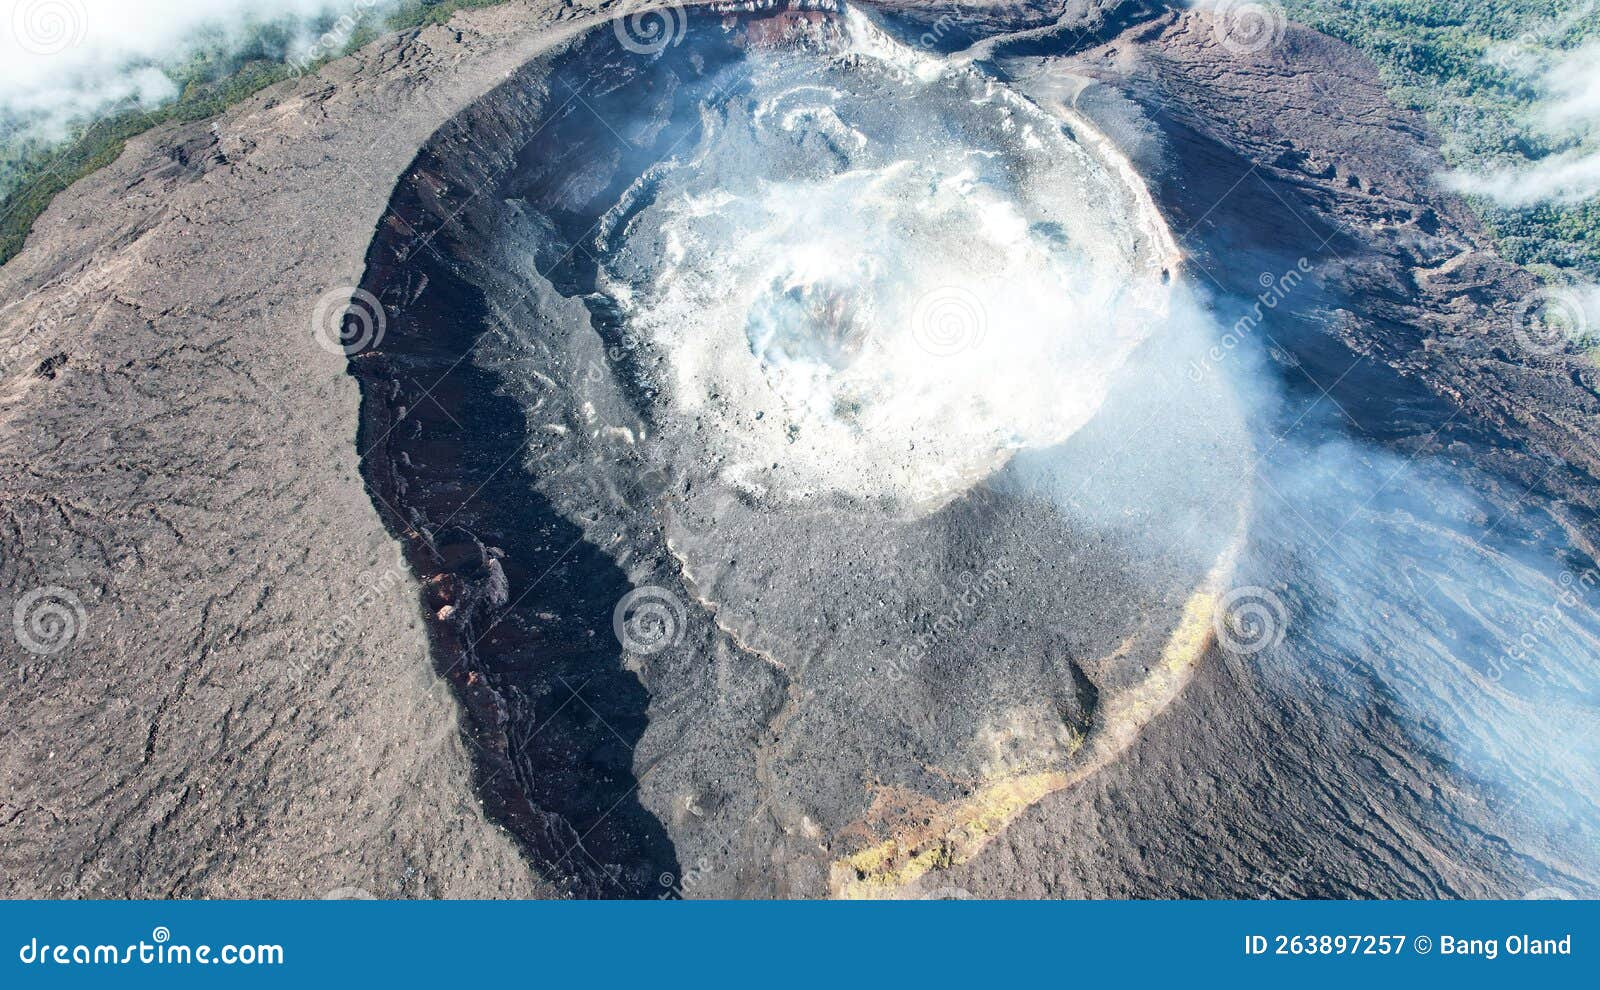 Aerial View Of Mount Slamet Or Gunung Slamet Is An Active Stratovolcano In The Purbalingga